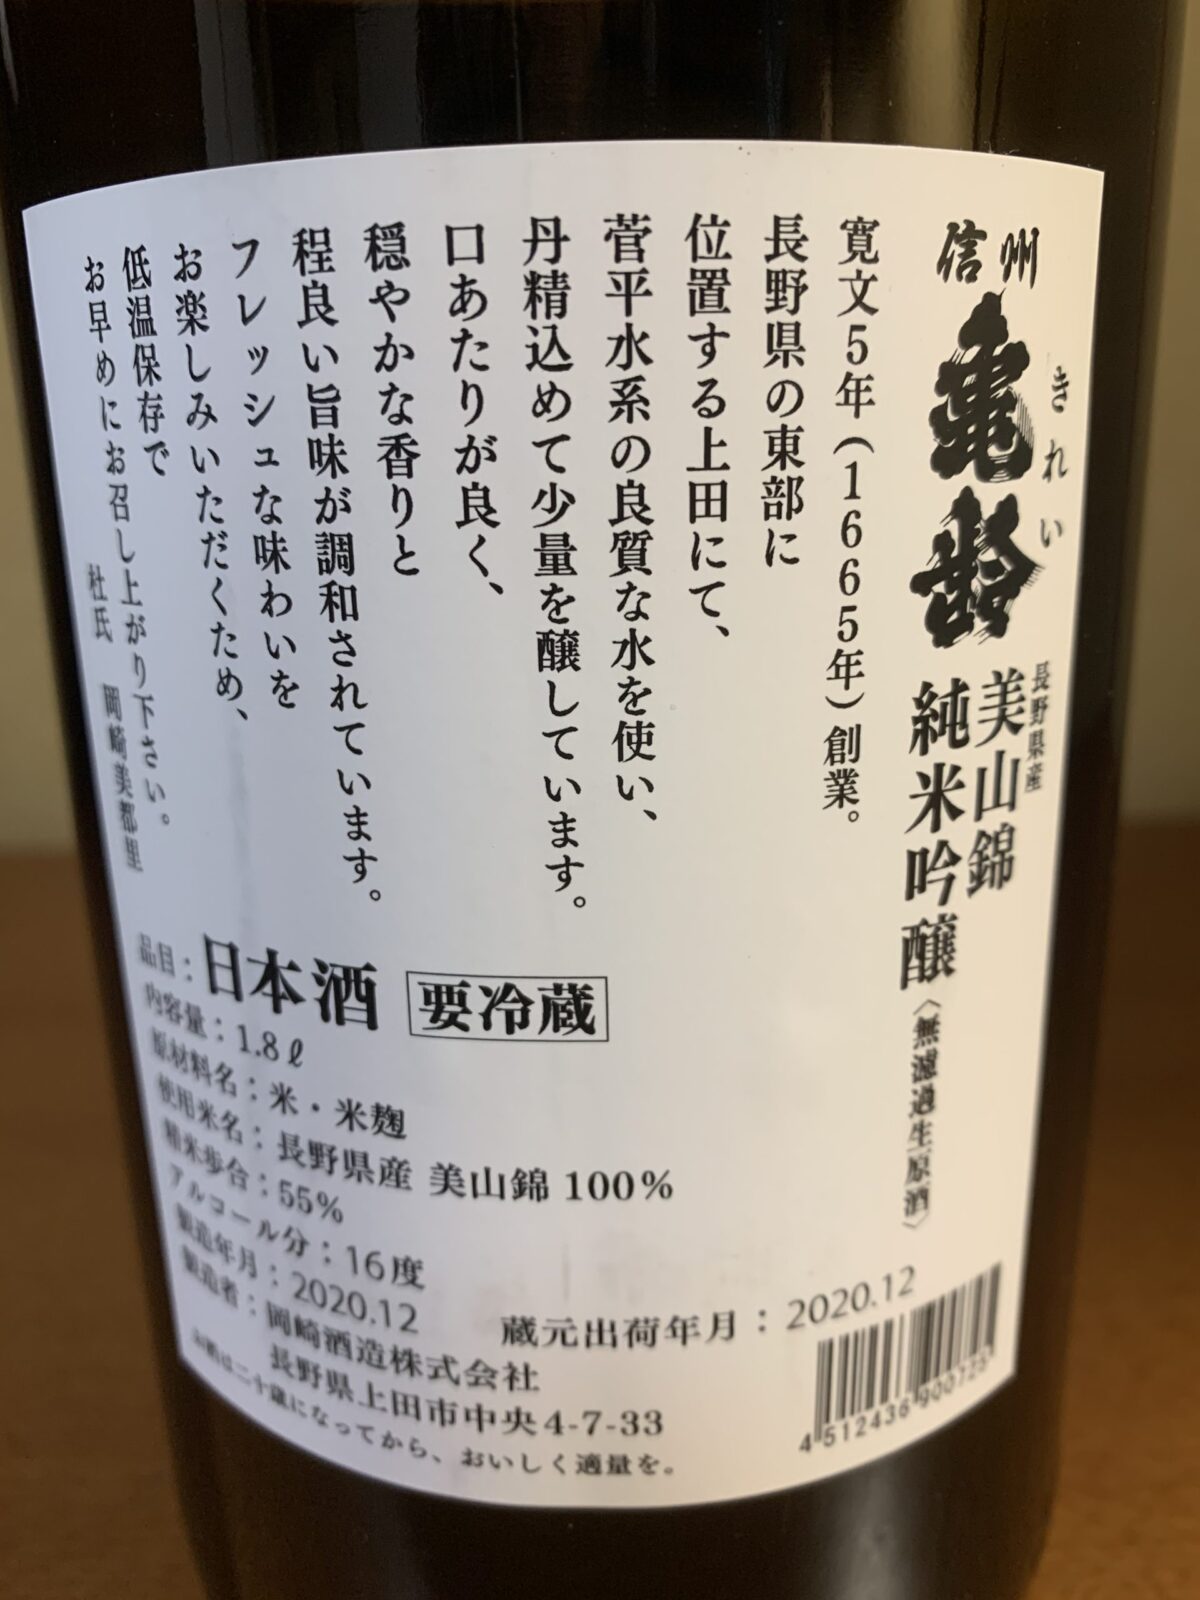 長野の日本酒『信州亀齢 純吟美山錦』は気品ある香りと綺麗な飲み口 | 日本酒探訪